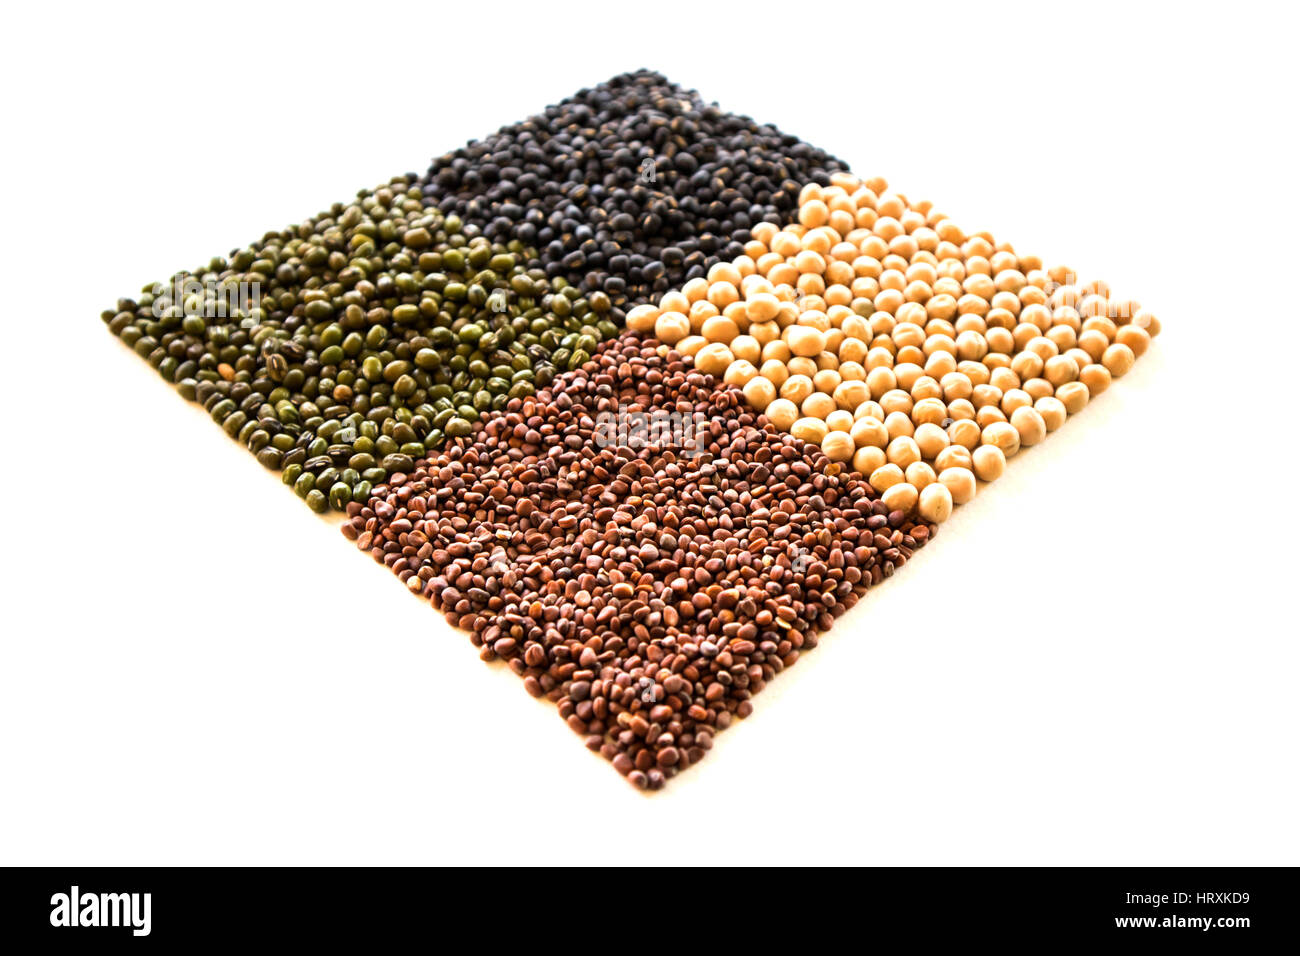 Pflanzliche Samen. Die richtige Ernährung mit dem Zusatz von Samen. Chia-Samen. Leinsamen. Weiße Soja-Saatgut. Schwarze Bohnensamen. Stockfoto